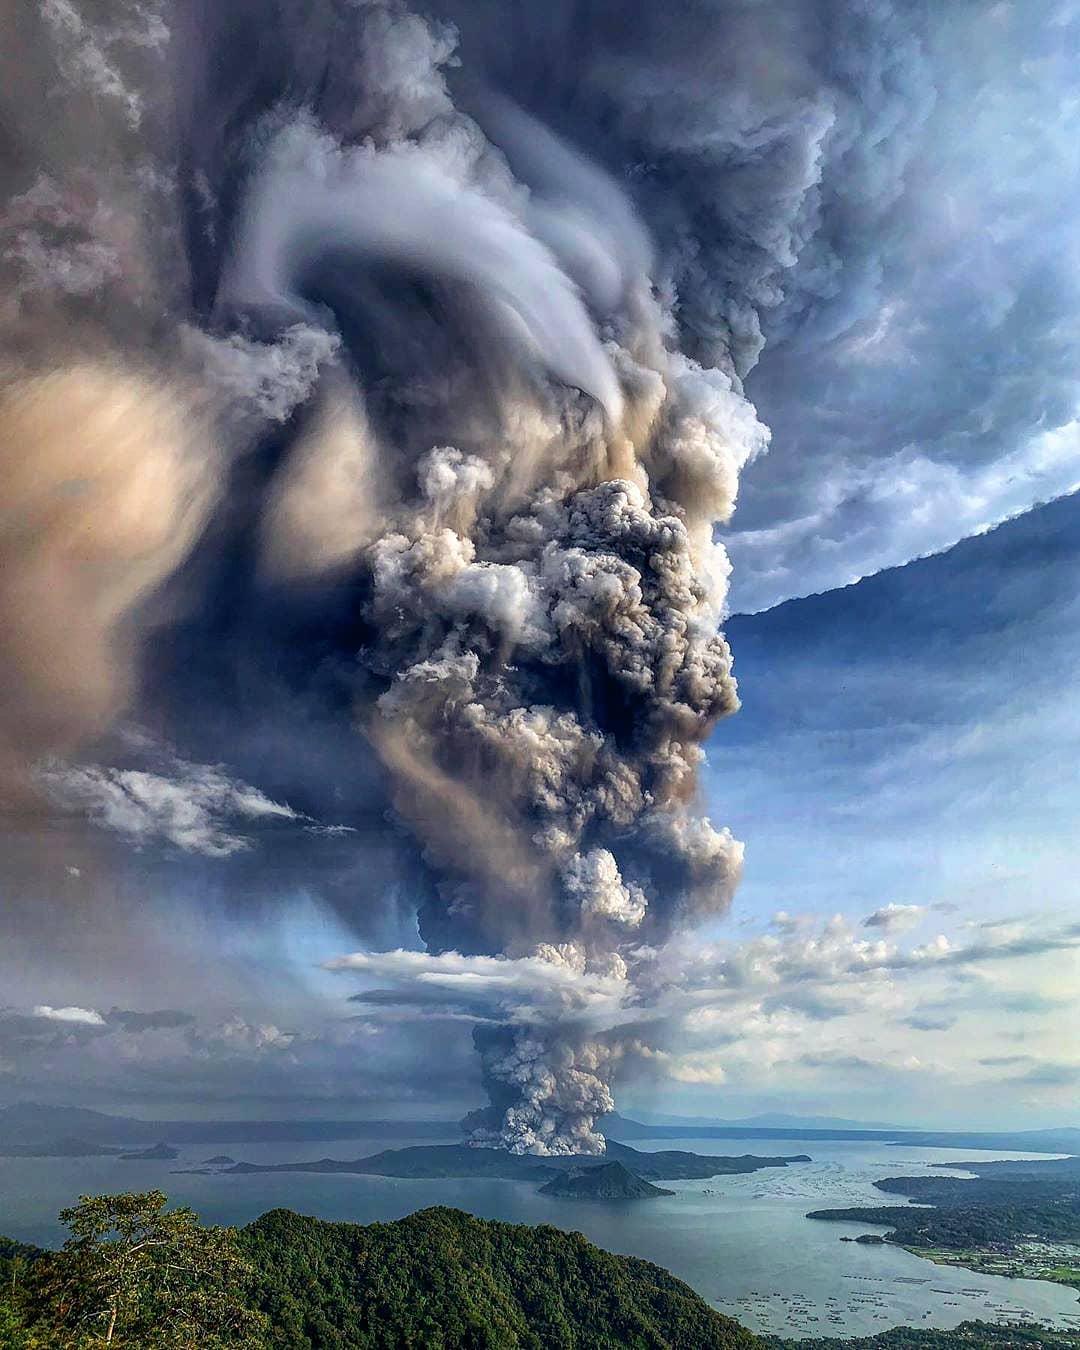 2020年1月12日喷发的菲律宾塔尔火山来自摄影师dantepamintuan